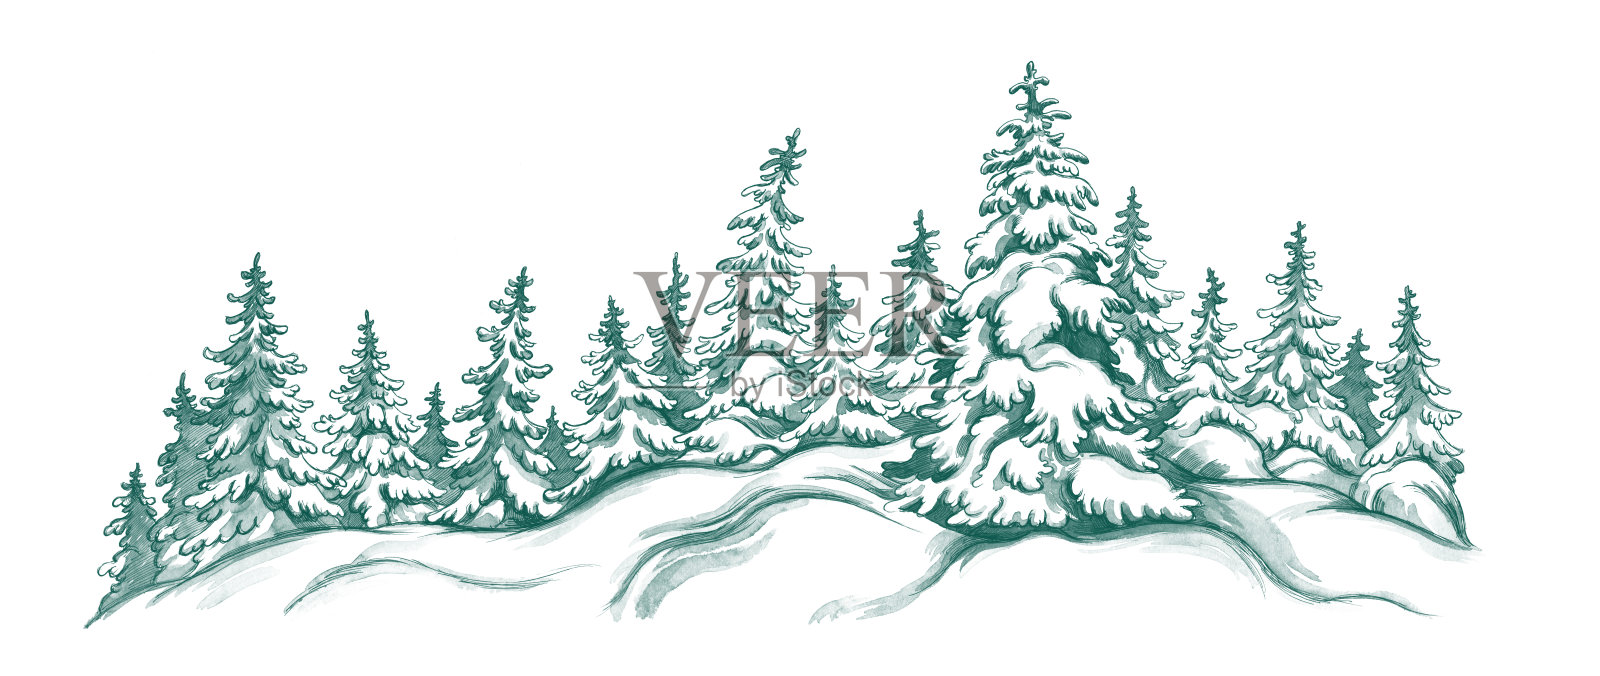 冬天的风景插画图片素材